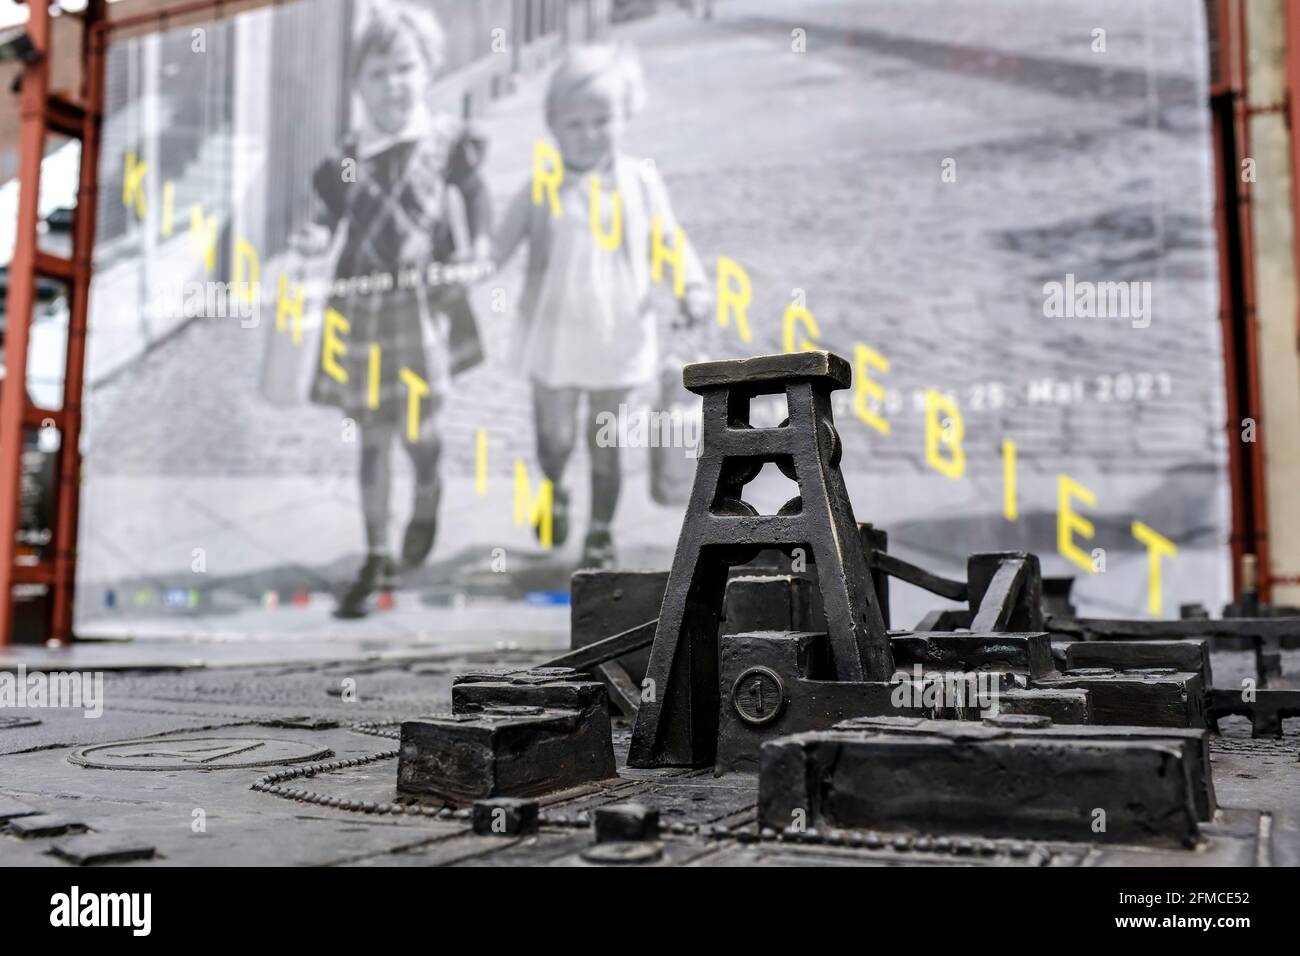 07.05.2021, Essen, Nordrhein-Westfalen, Deutschland - Blick ueber ein kleines Modell der Zeche Zollverein aus Eisen auf ein Werbeplakat fuer die Ausst Stock Photo